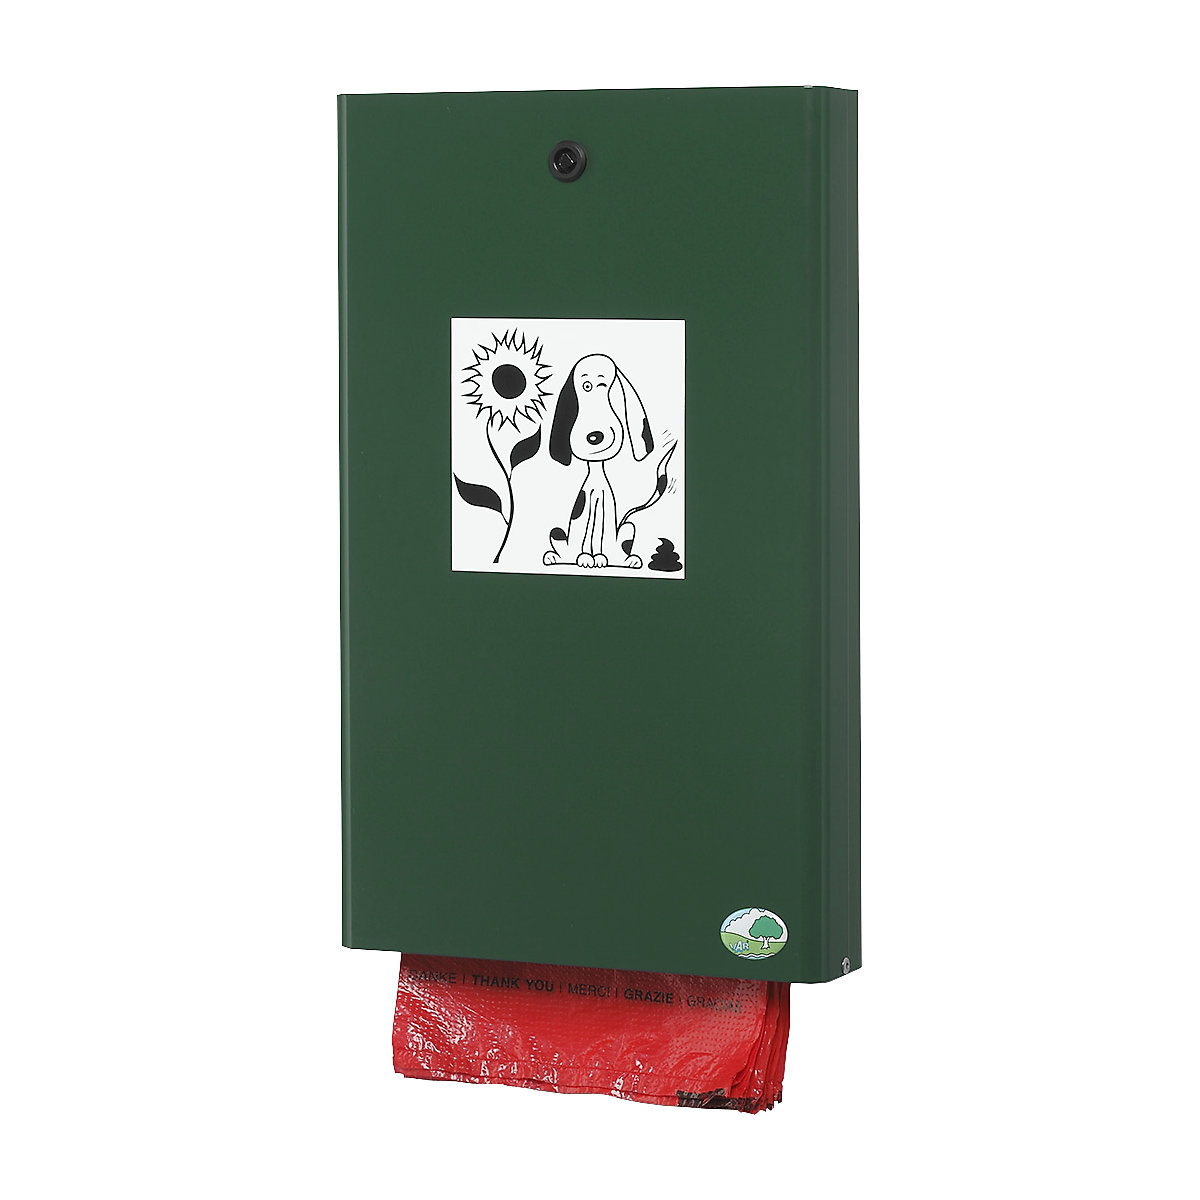 VAR – Distributeur de sachets pour excréments canins, h x l x p 430 x 265 x 60 mm, vert mousse